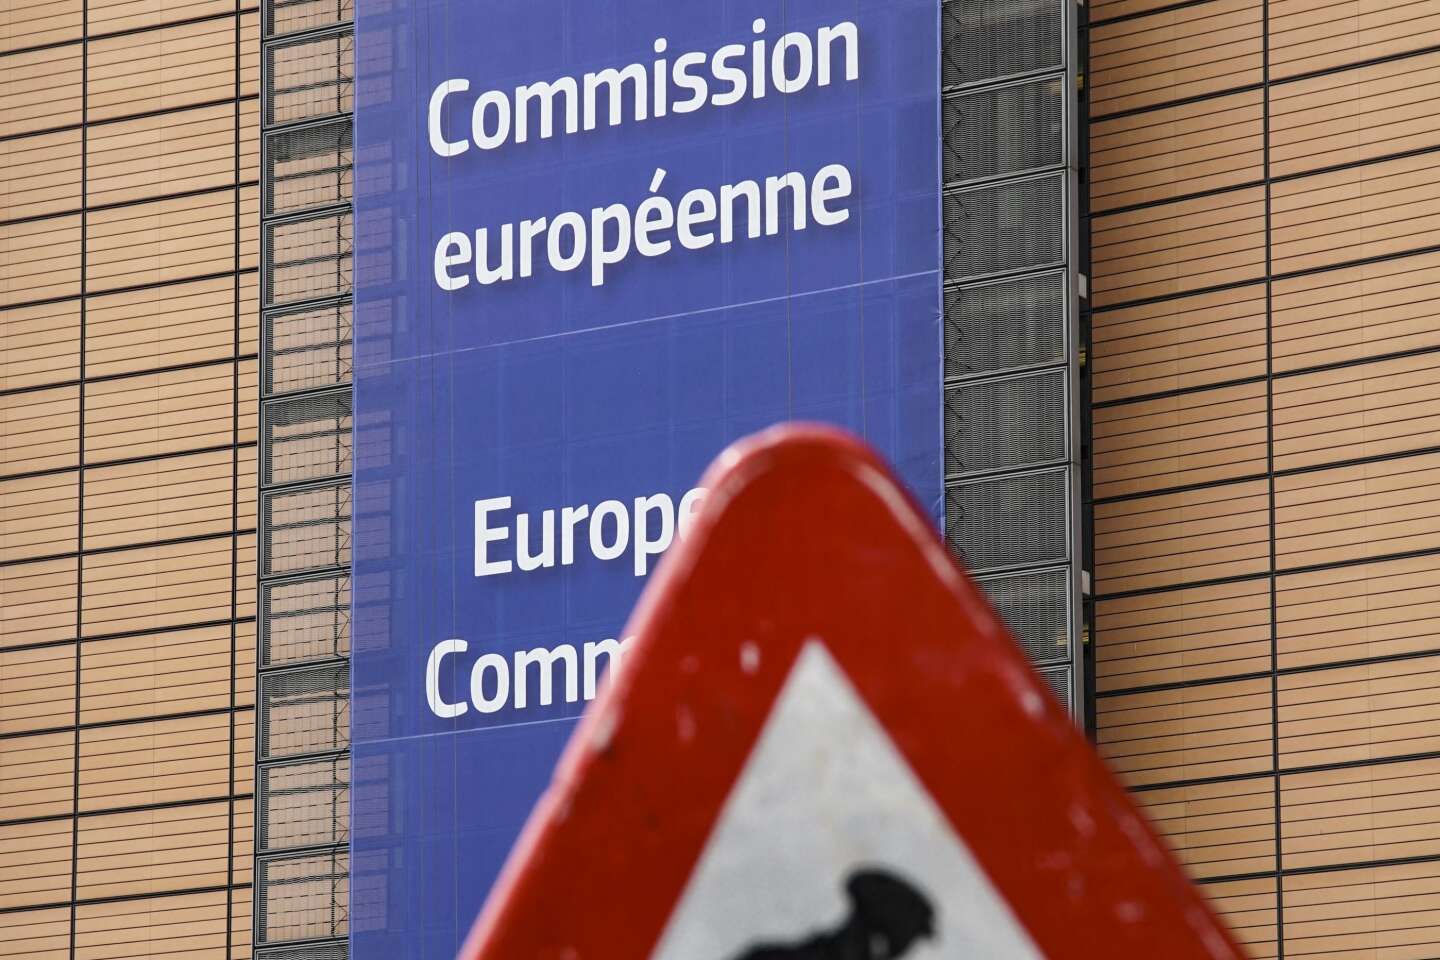 Les règles du triangle de signalisation dans les pays européens - France  Bleu